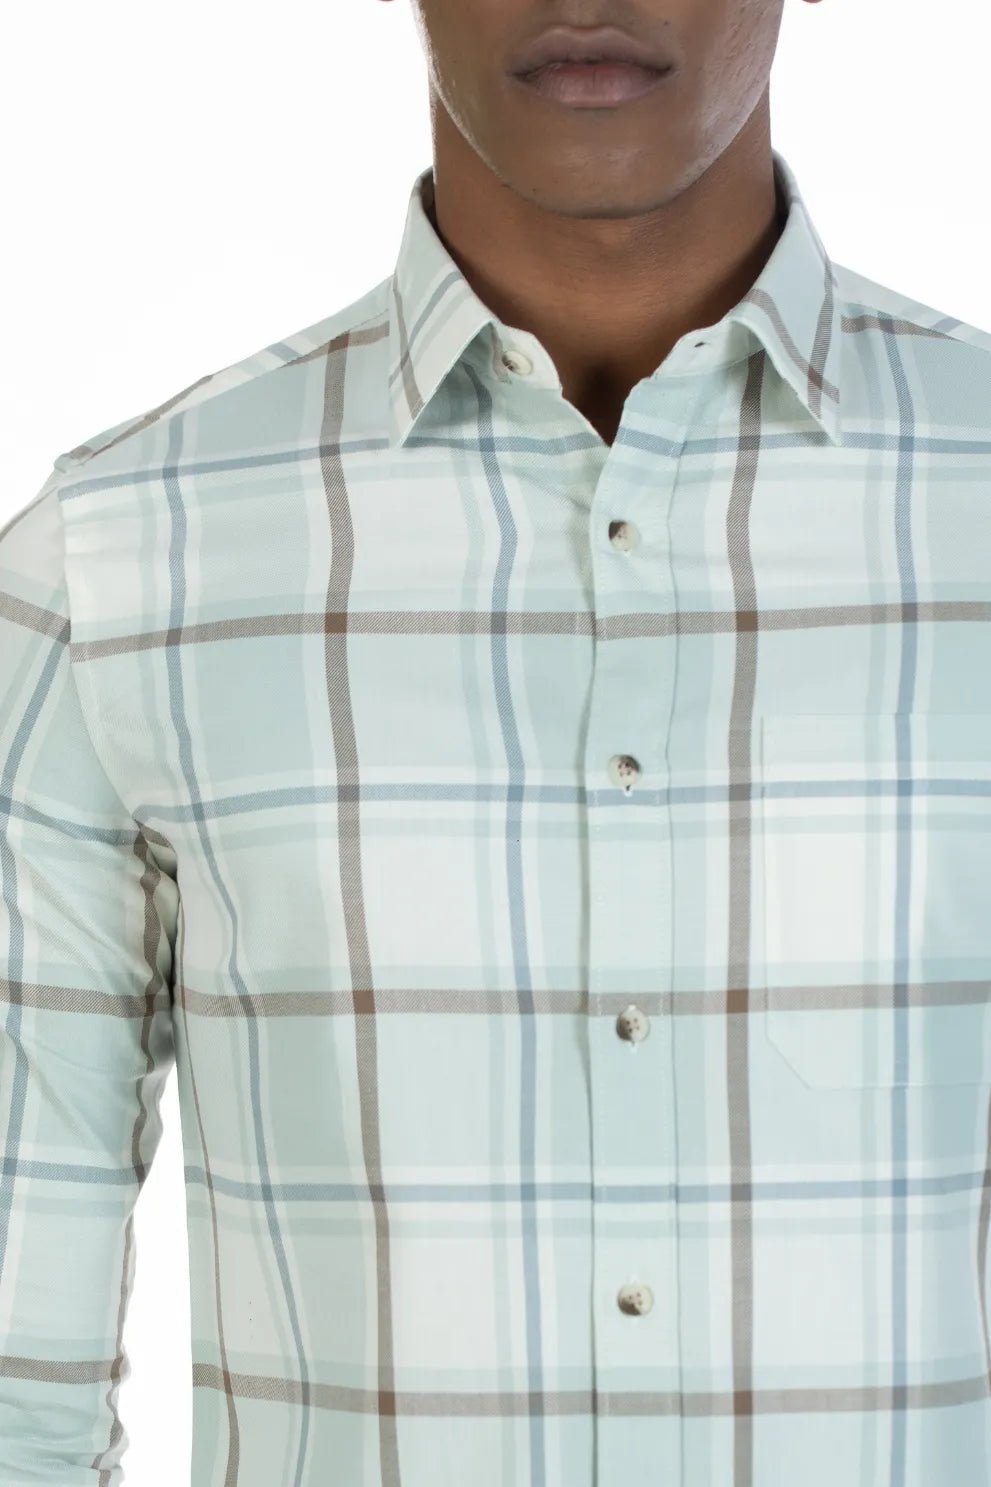 Buy Single Pocket Plaid Twill Shirt Online.